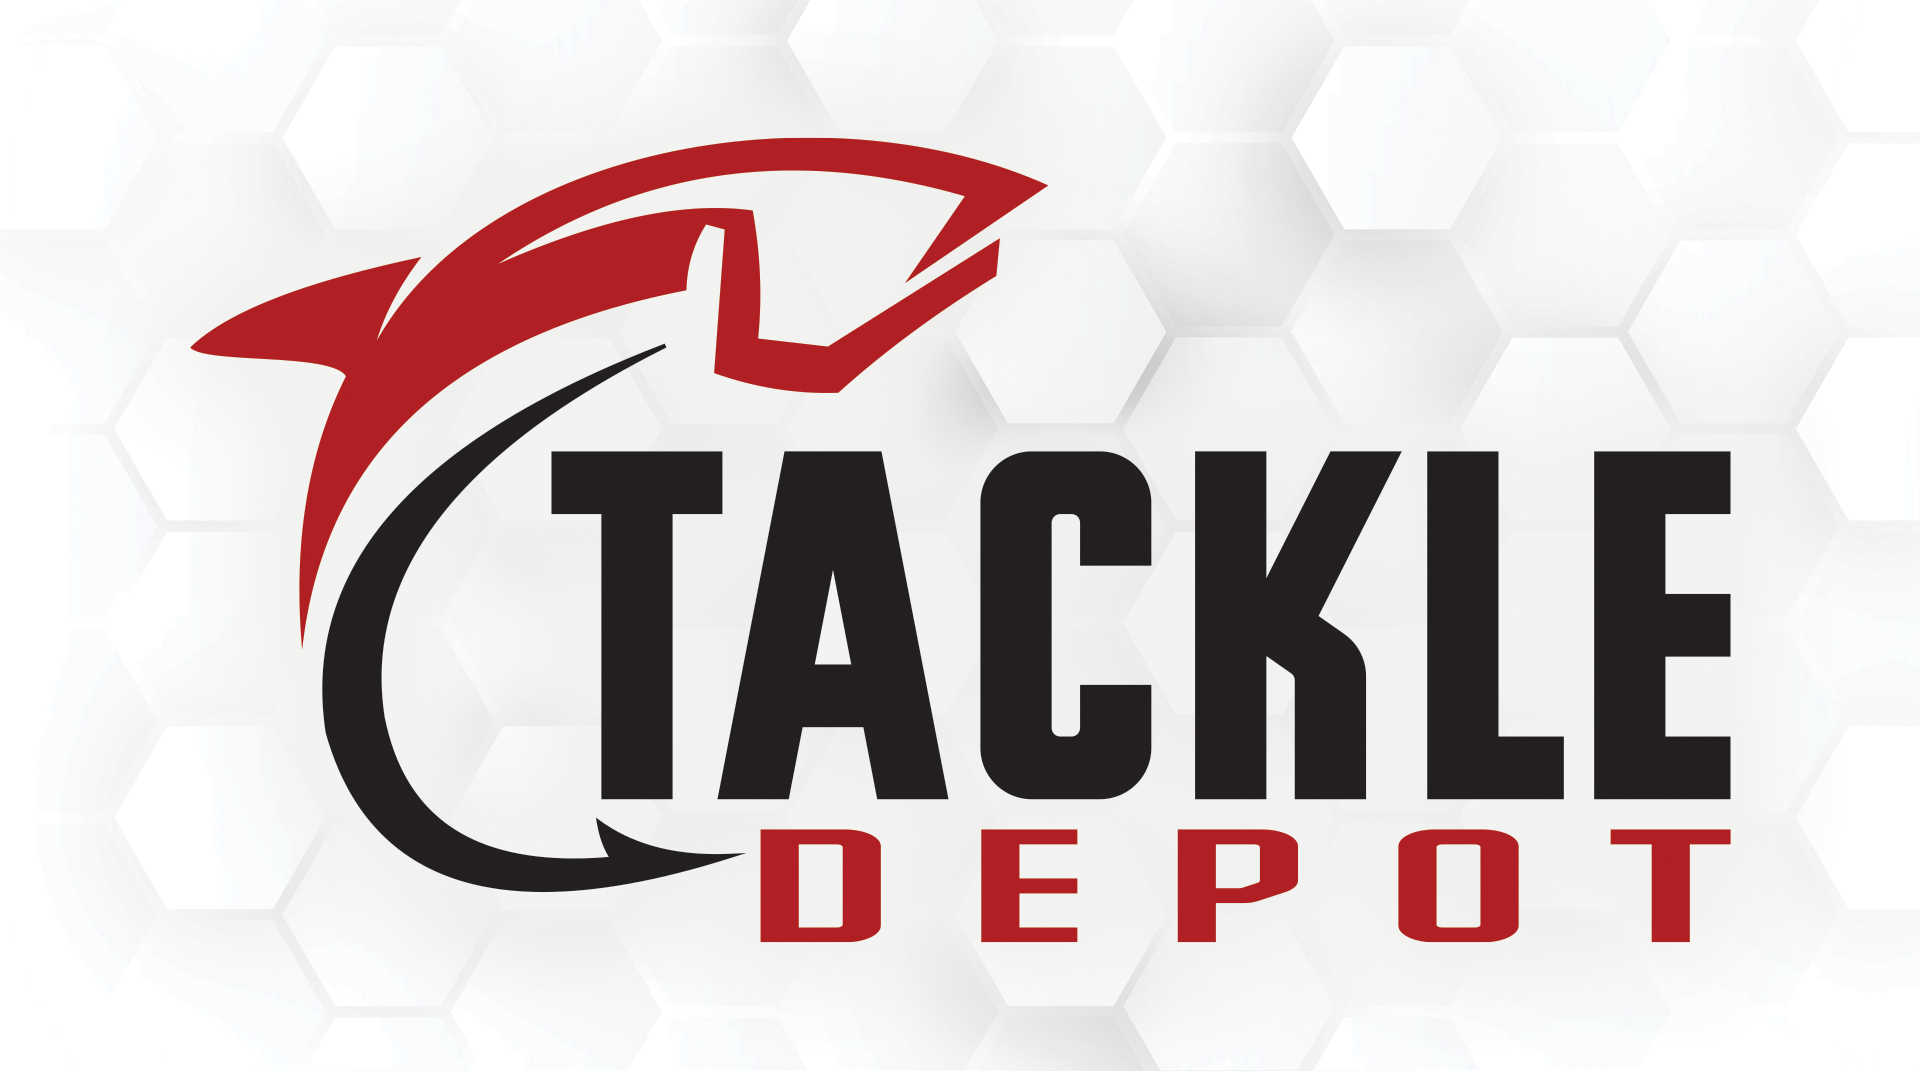 Contact Tackle Depot - Tackle Depot